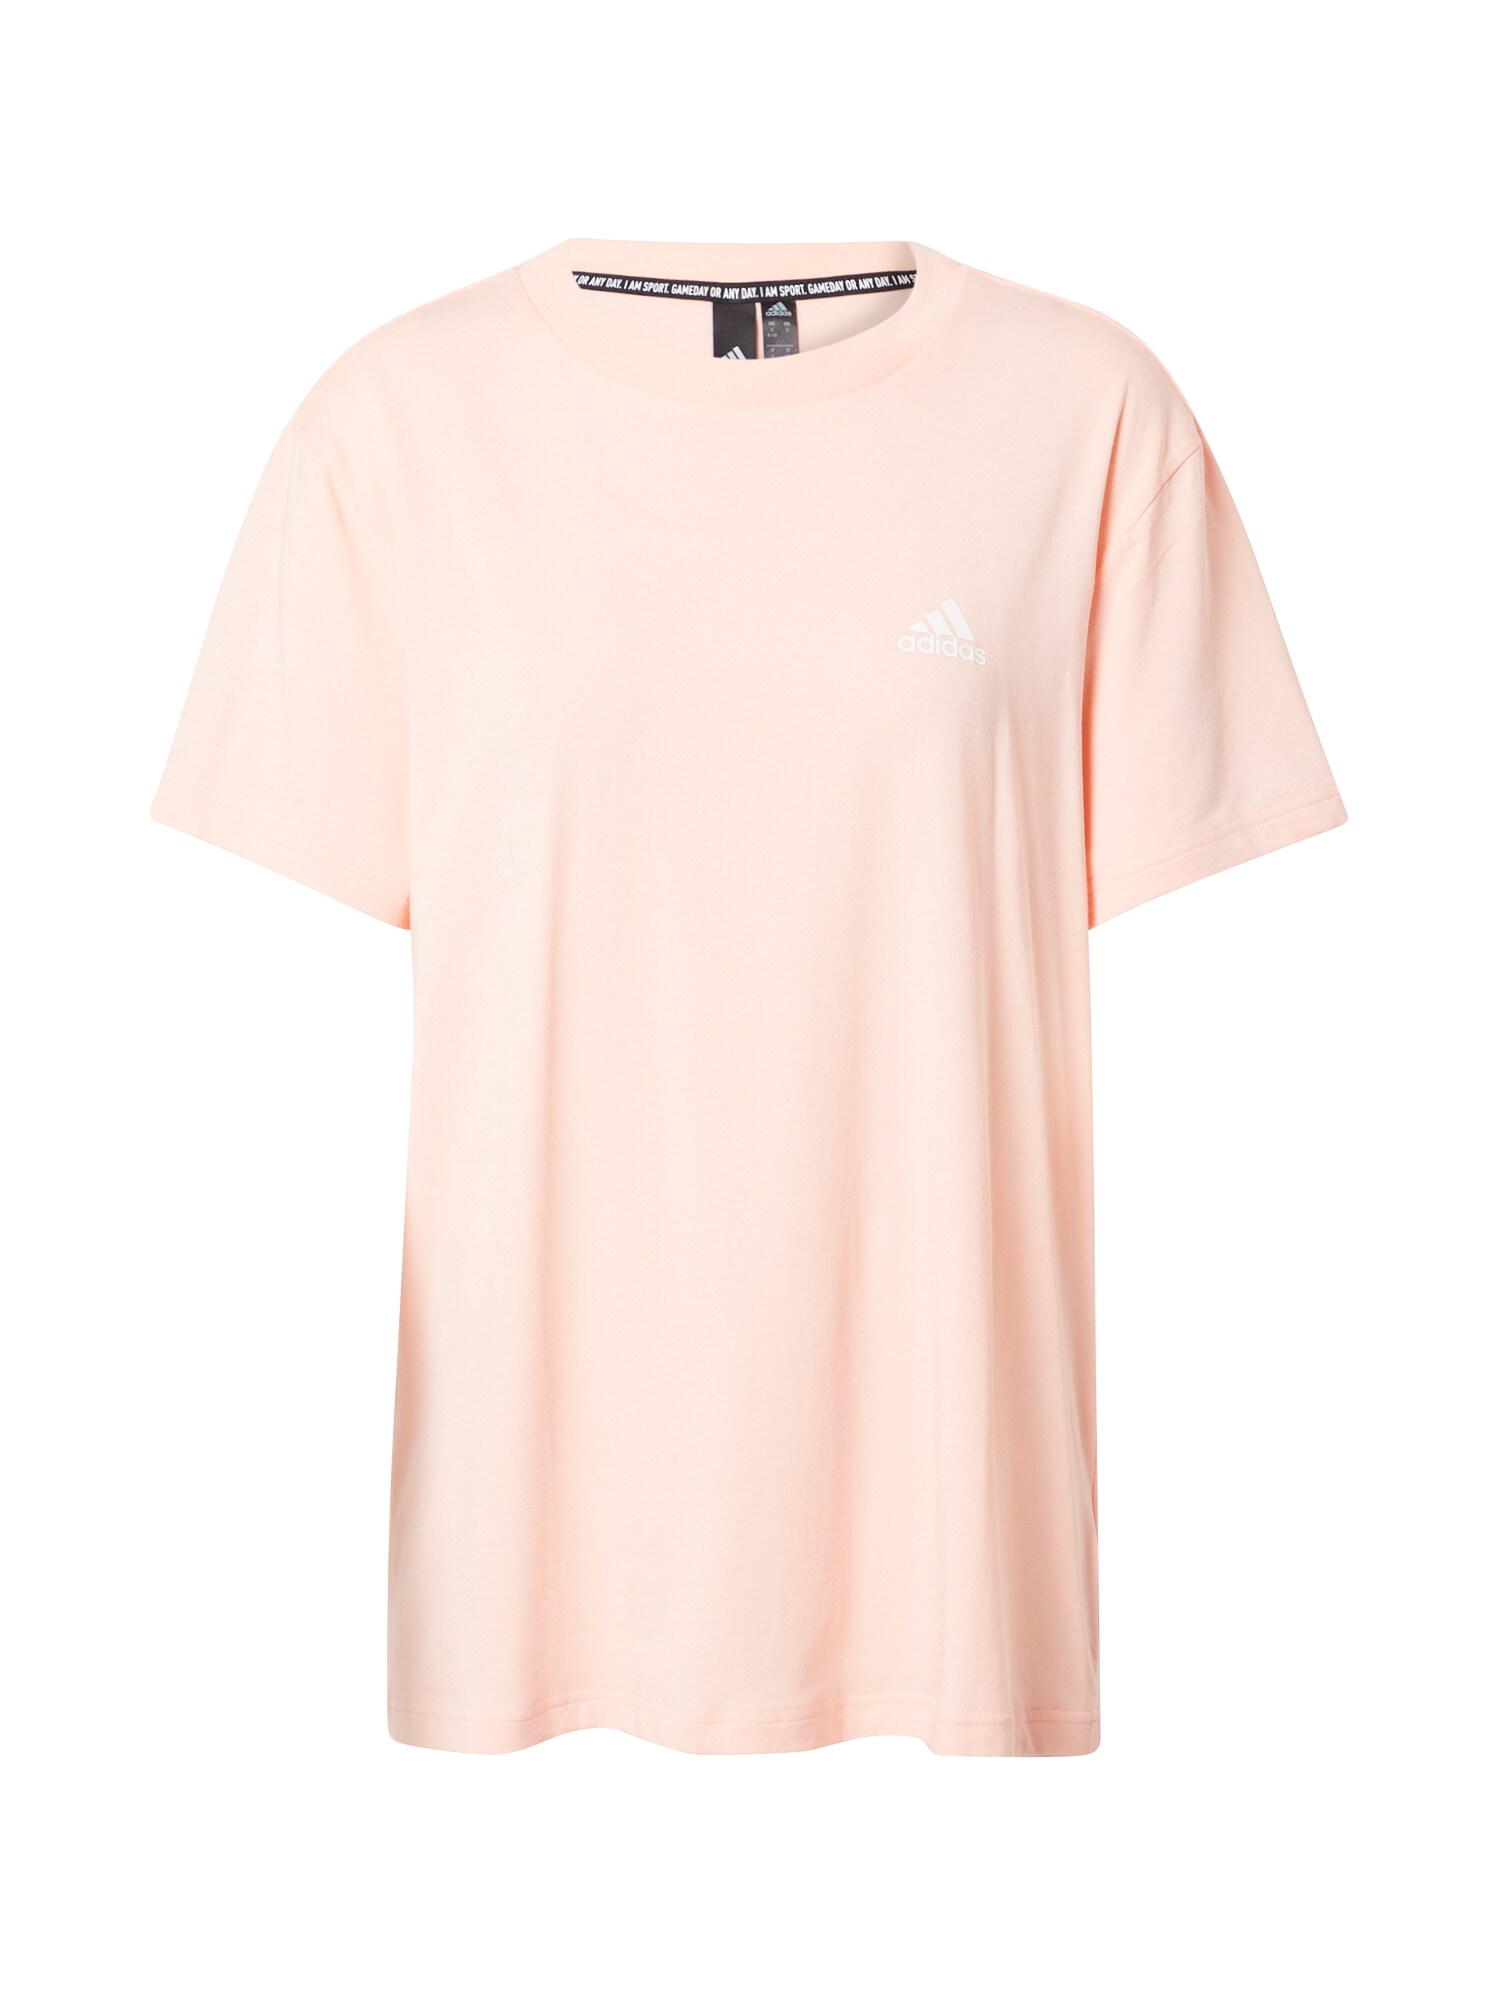 ADIDAS PERFORMANCE Sportiniai marškinėliai  balta / pastelinė rožinė